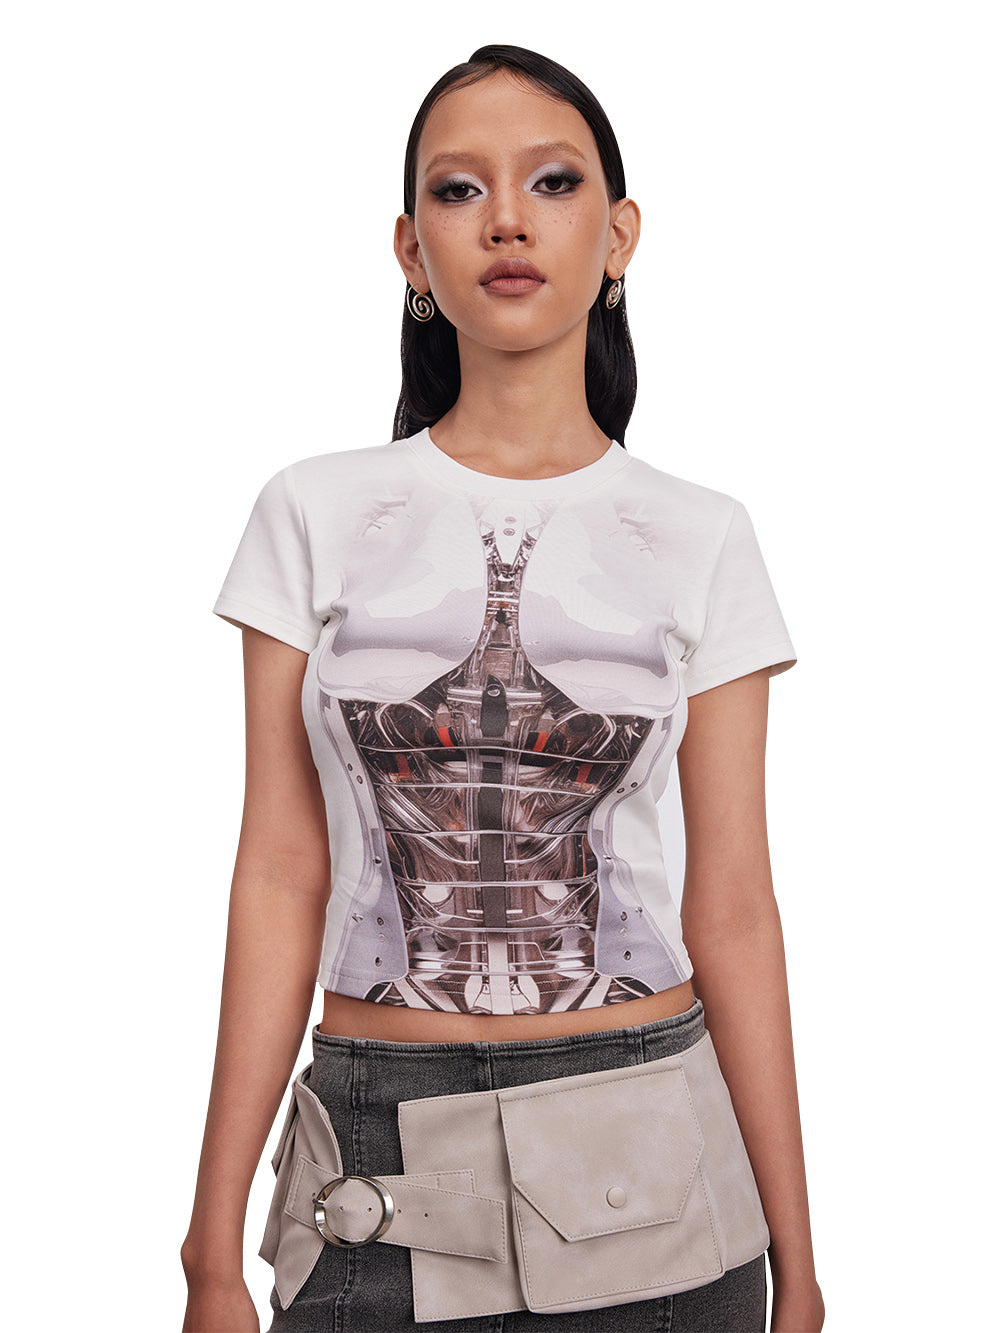 MUKTANK x Damage Asia "Artificial Human Mechanical Princess"Stretchy T-shirt